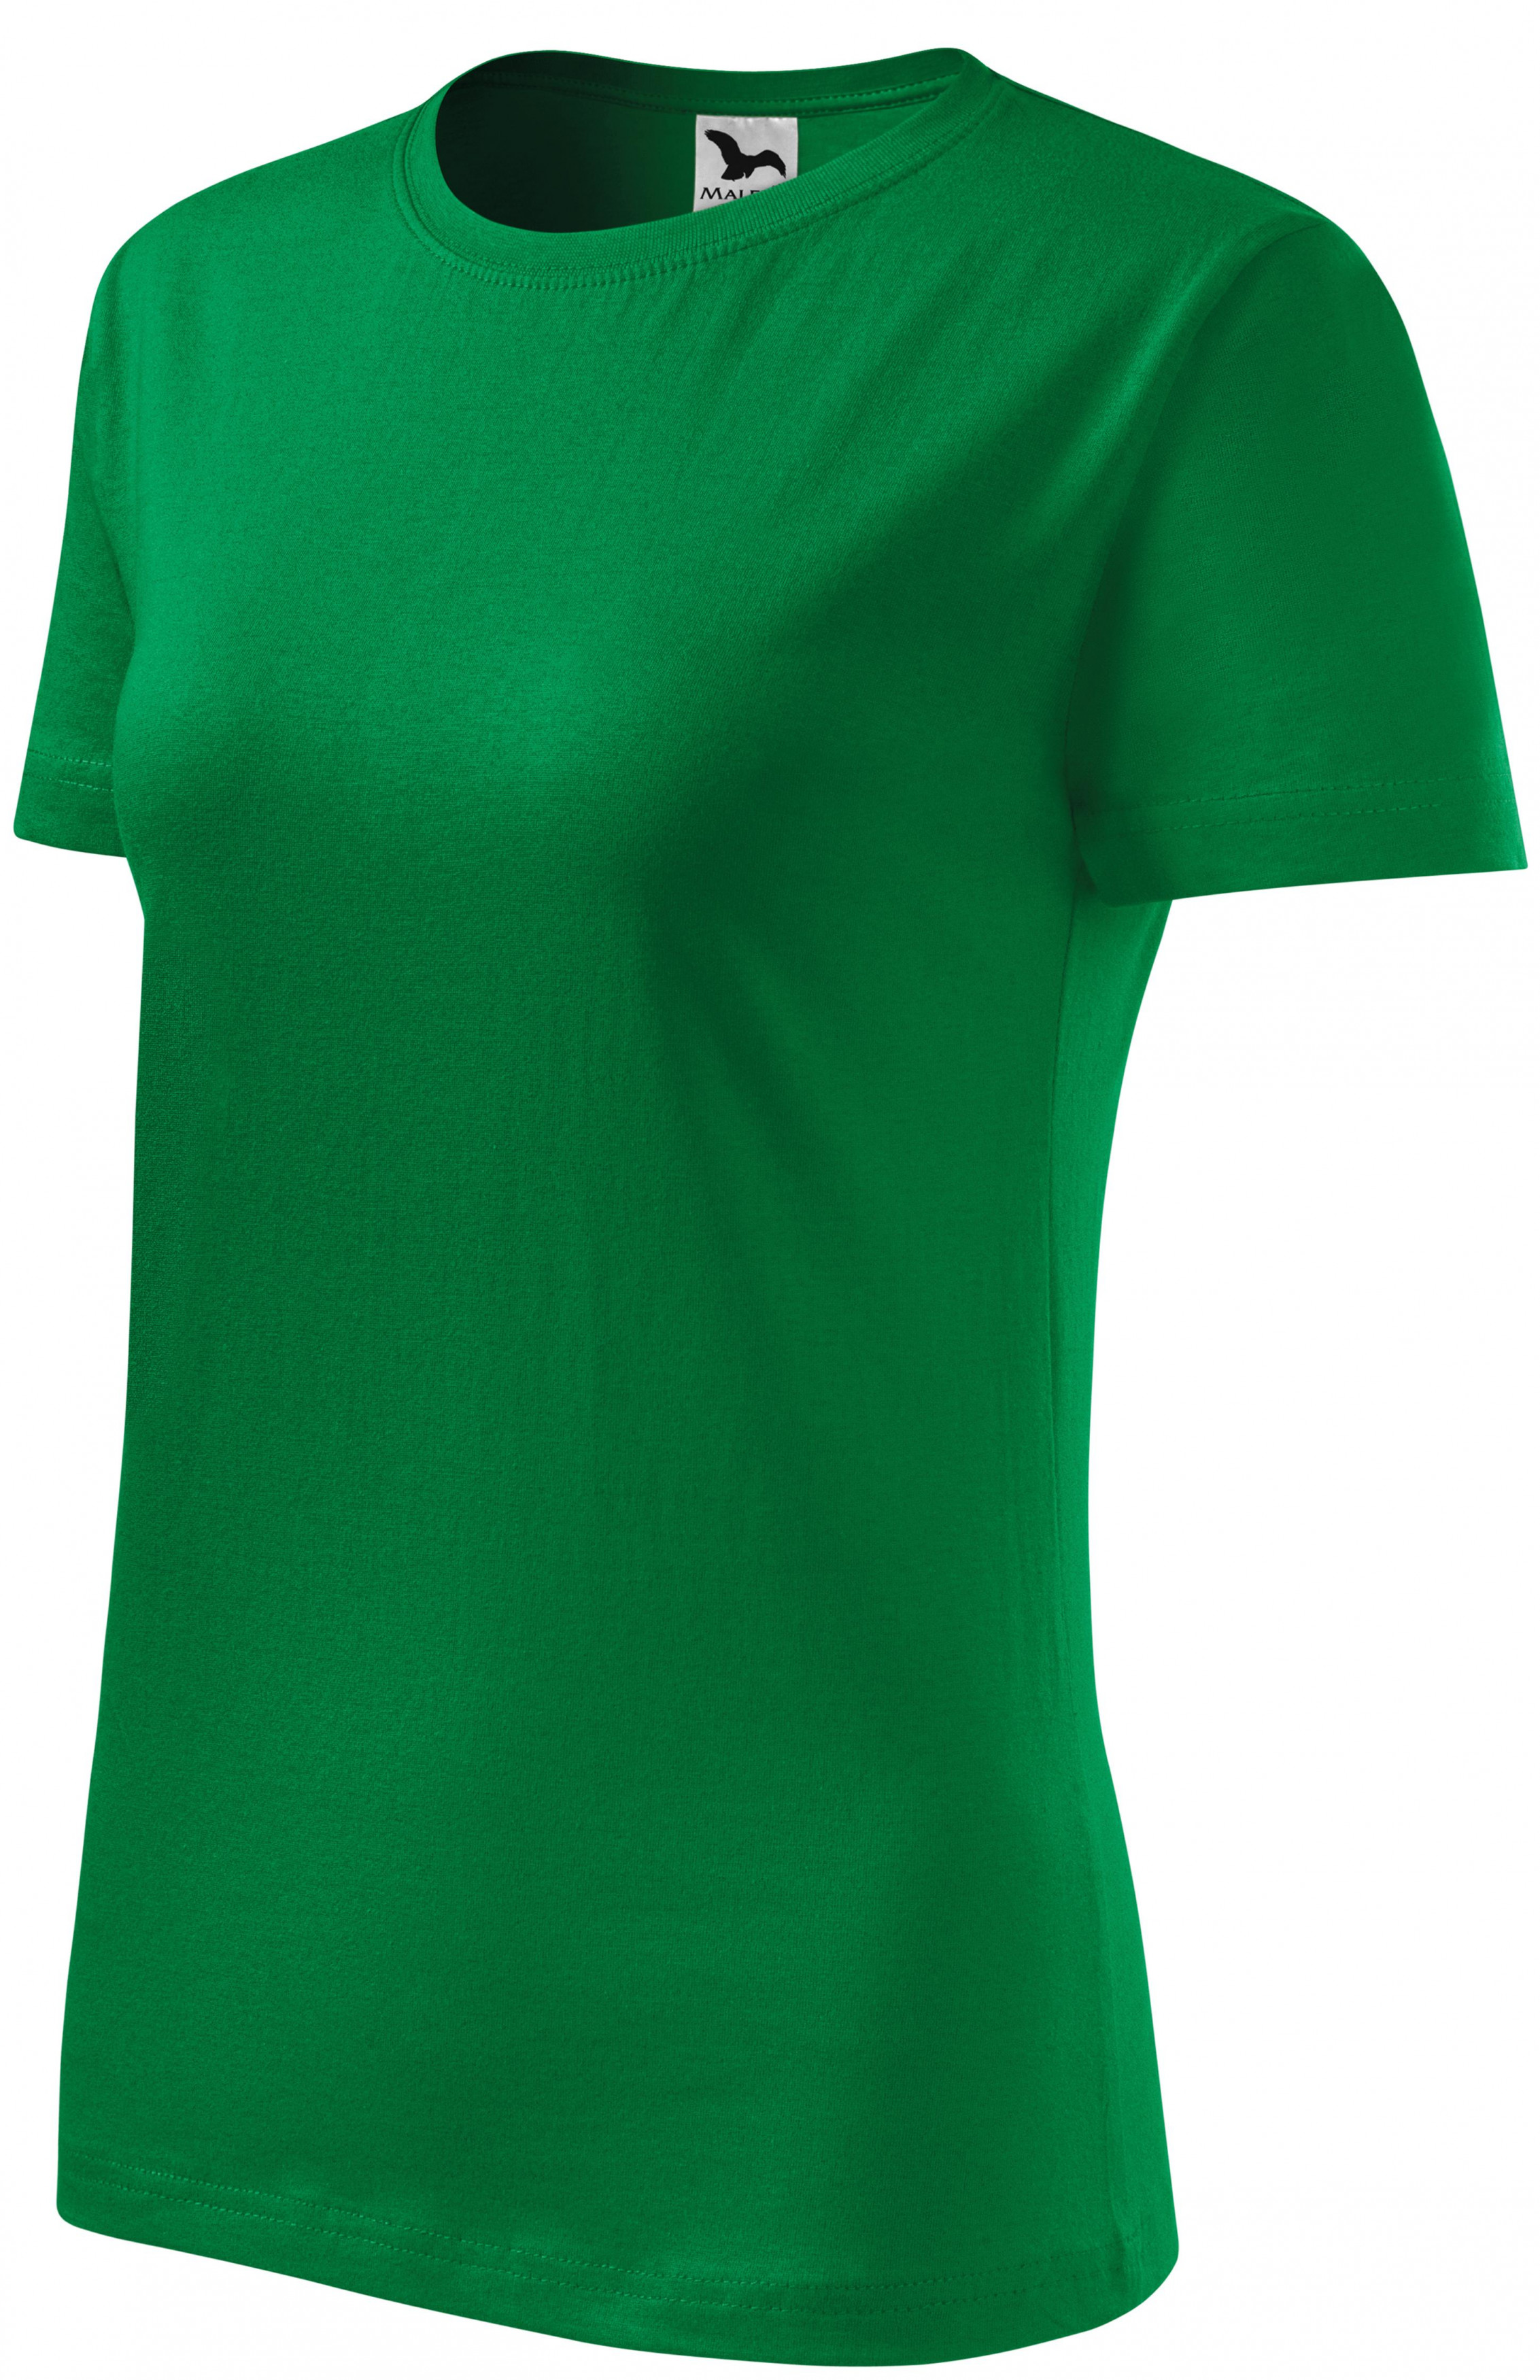 Dámske tričko klasické, trávová zelená, XL